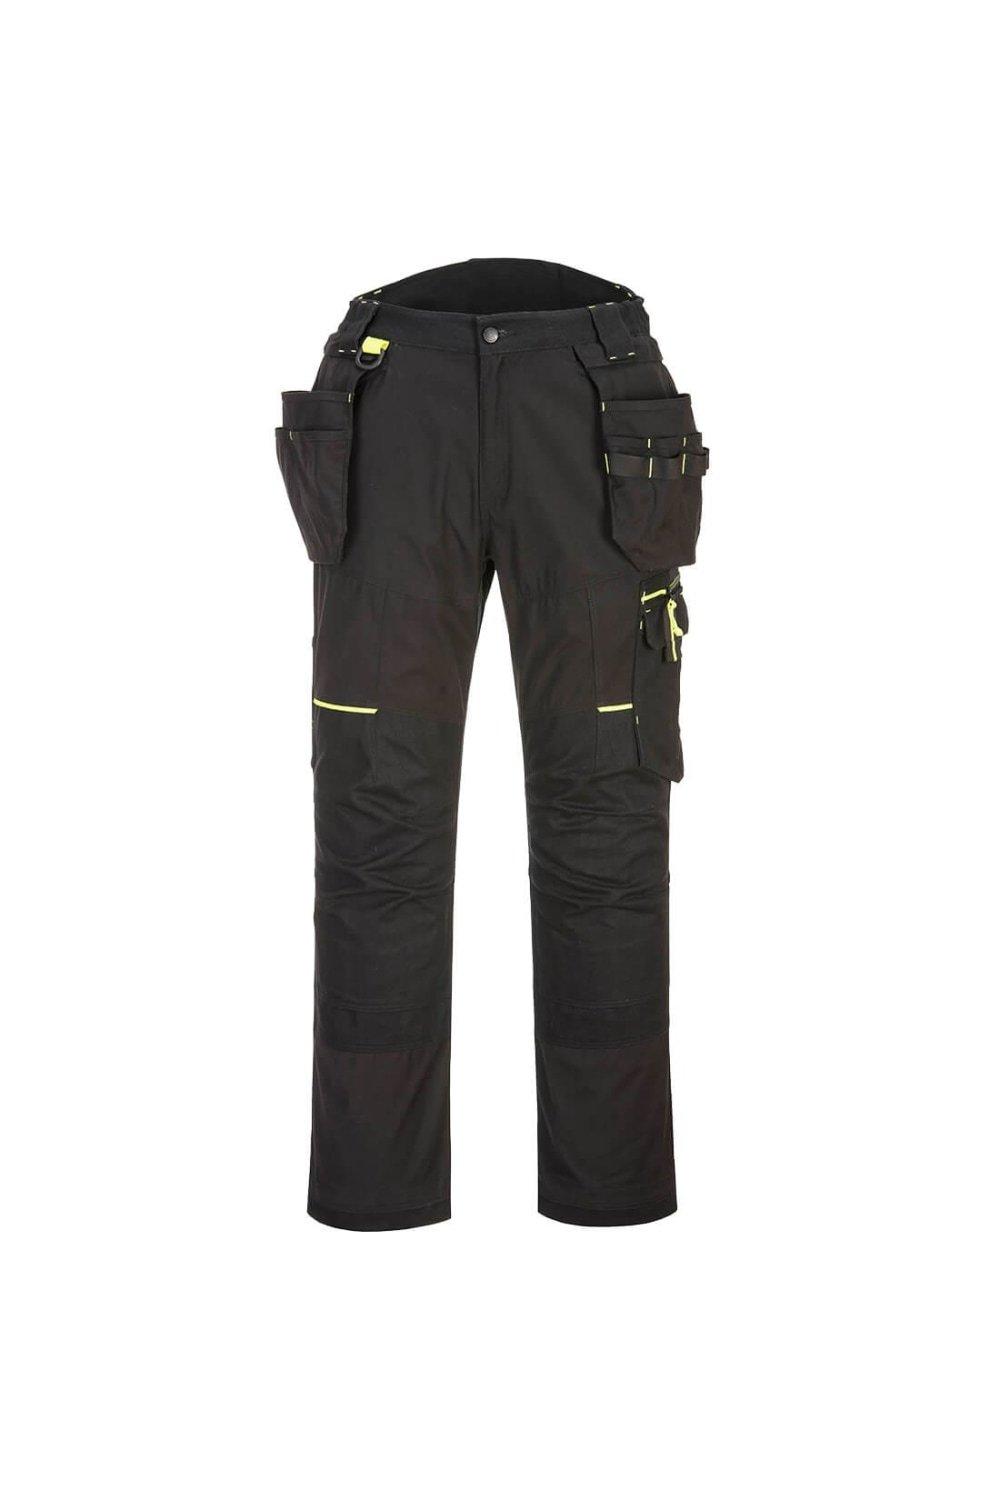 Эластичные брюки с карманами Wx3 Eco Portwest, черный 8154260 force вороток г обр 260мм 8154260